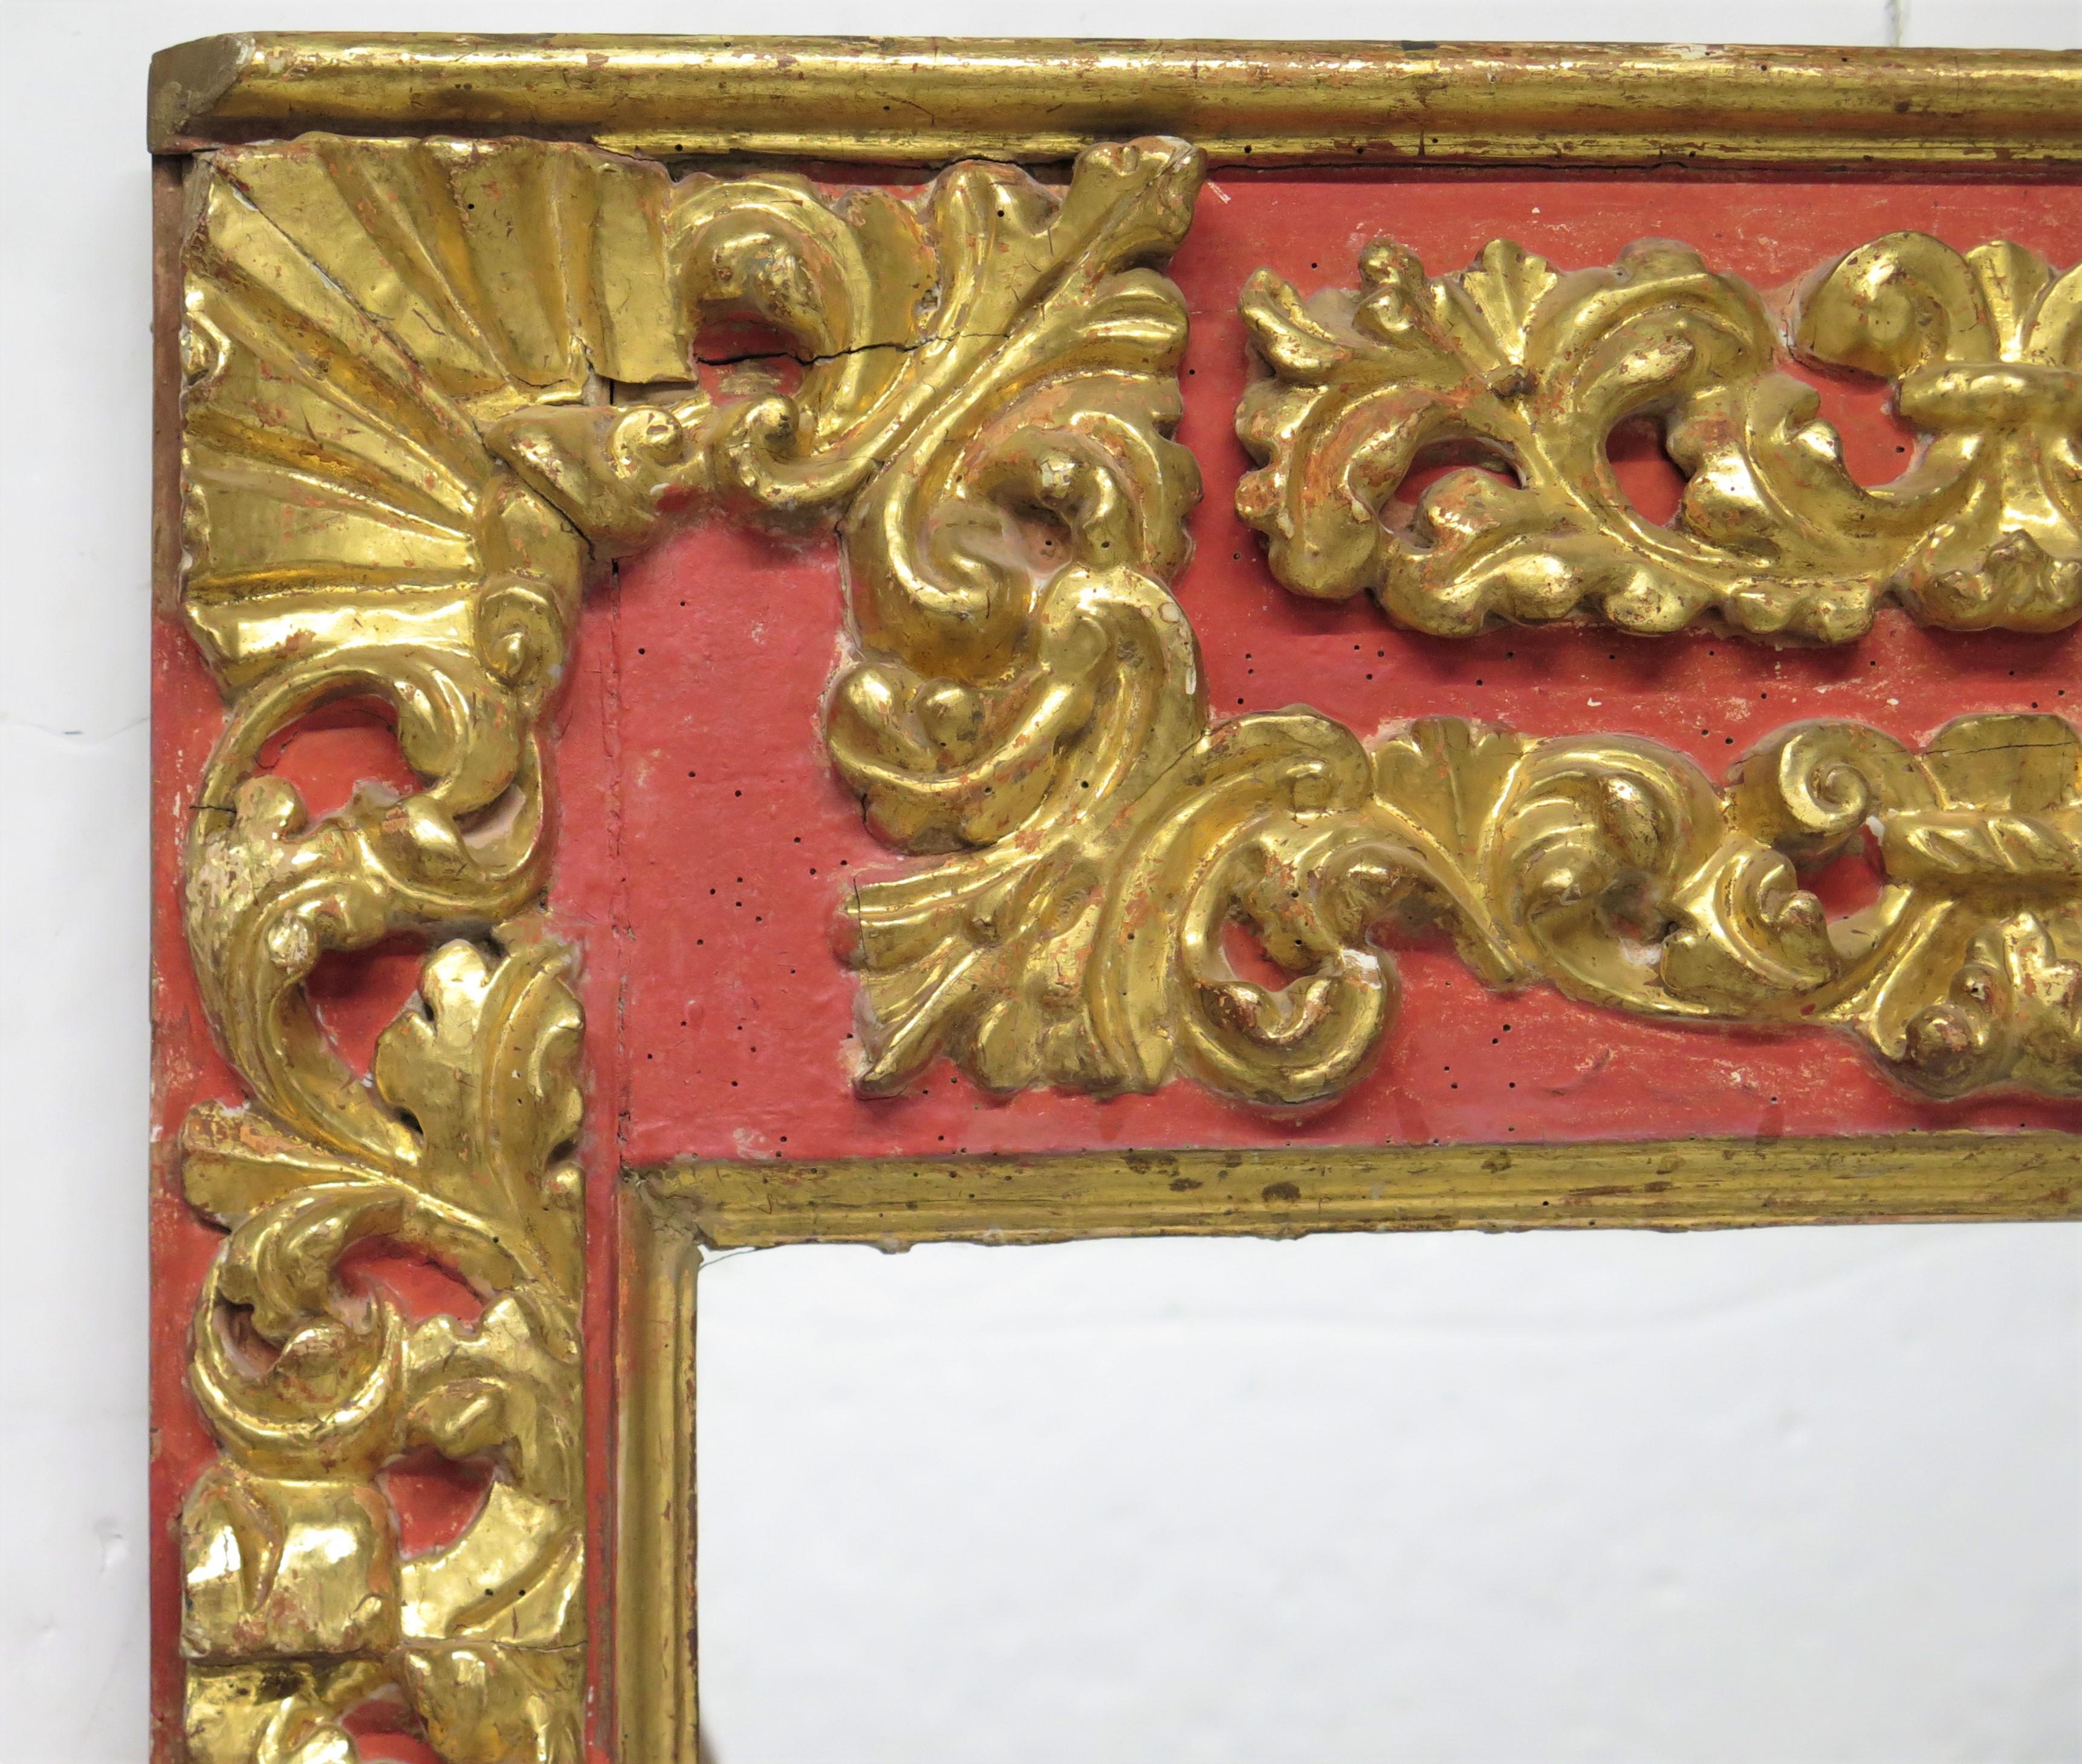 une paire de grands miroirs Coloni / Baroque espagnols, sculptés et dorés à la main, chacun avec une plaque de miroir plate, têtes de putti de chaque côté, rouge   

MESURES :

62